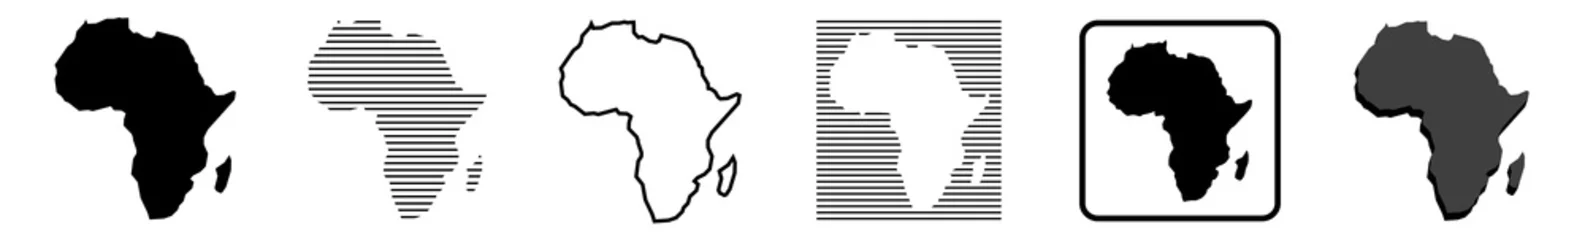 Fotobehang Afrika kaart   Afrikaanse grens   werelddeel   variaties © endstern